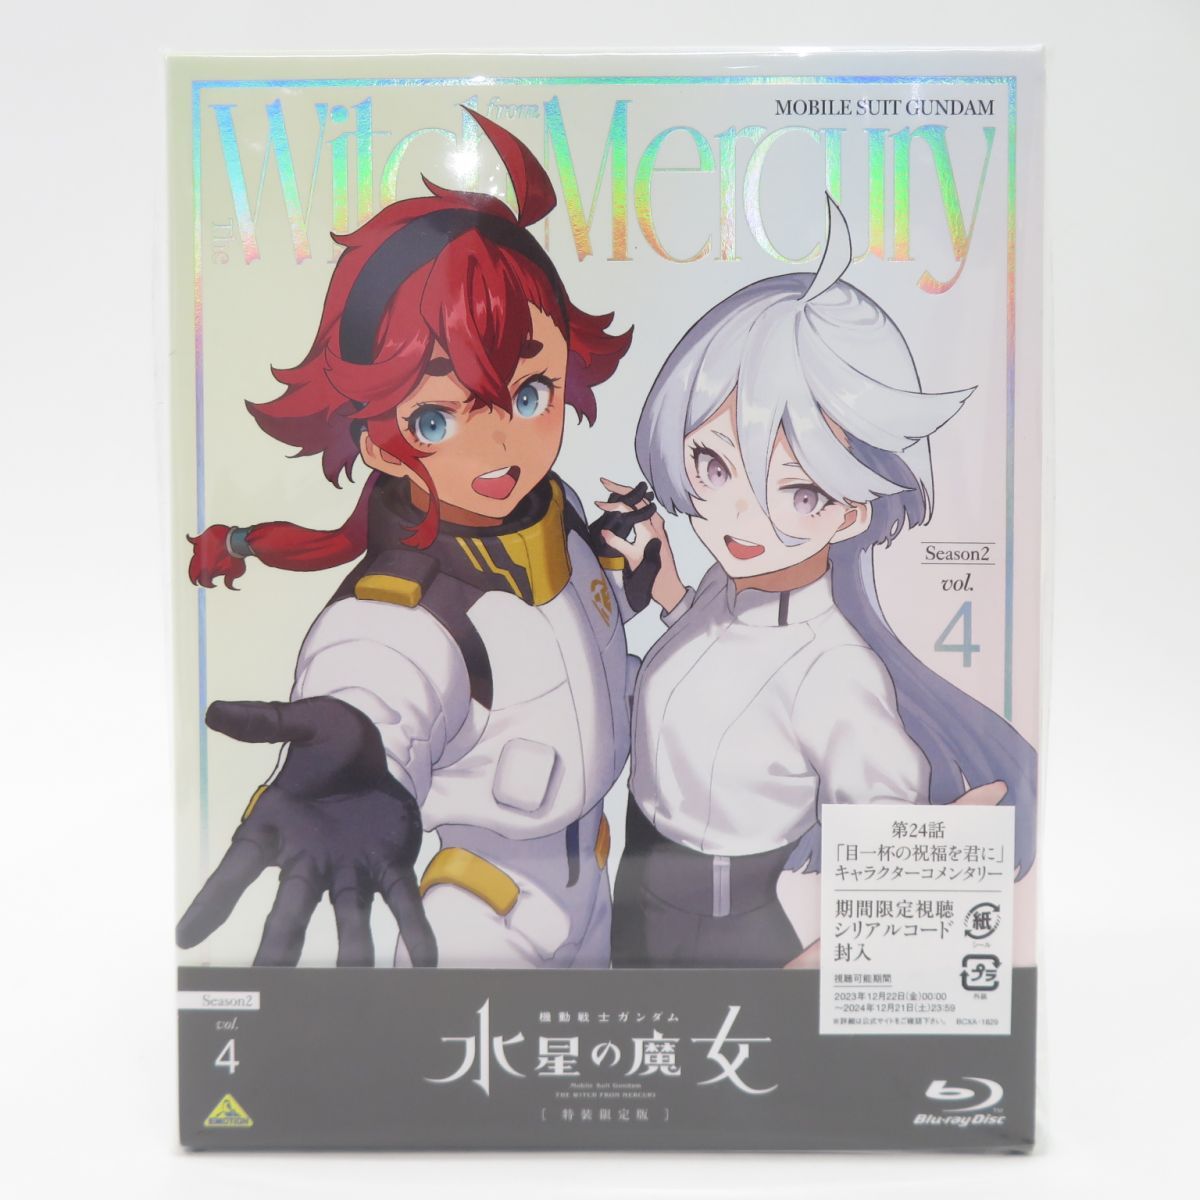 Blu-ray+2CD 機動戦士ガンダム 水星の魔女 Season2 vol.4 特装限定版